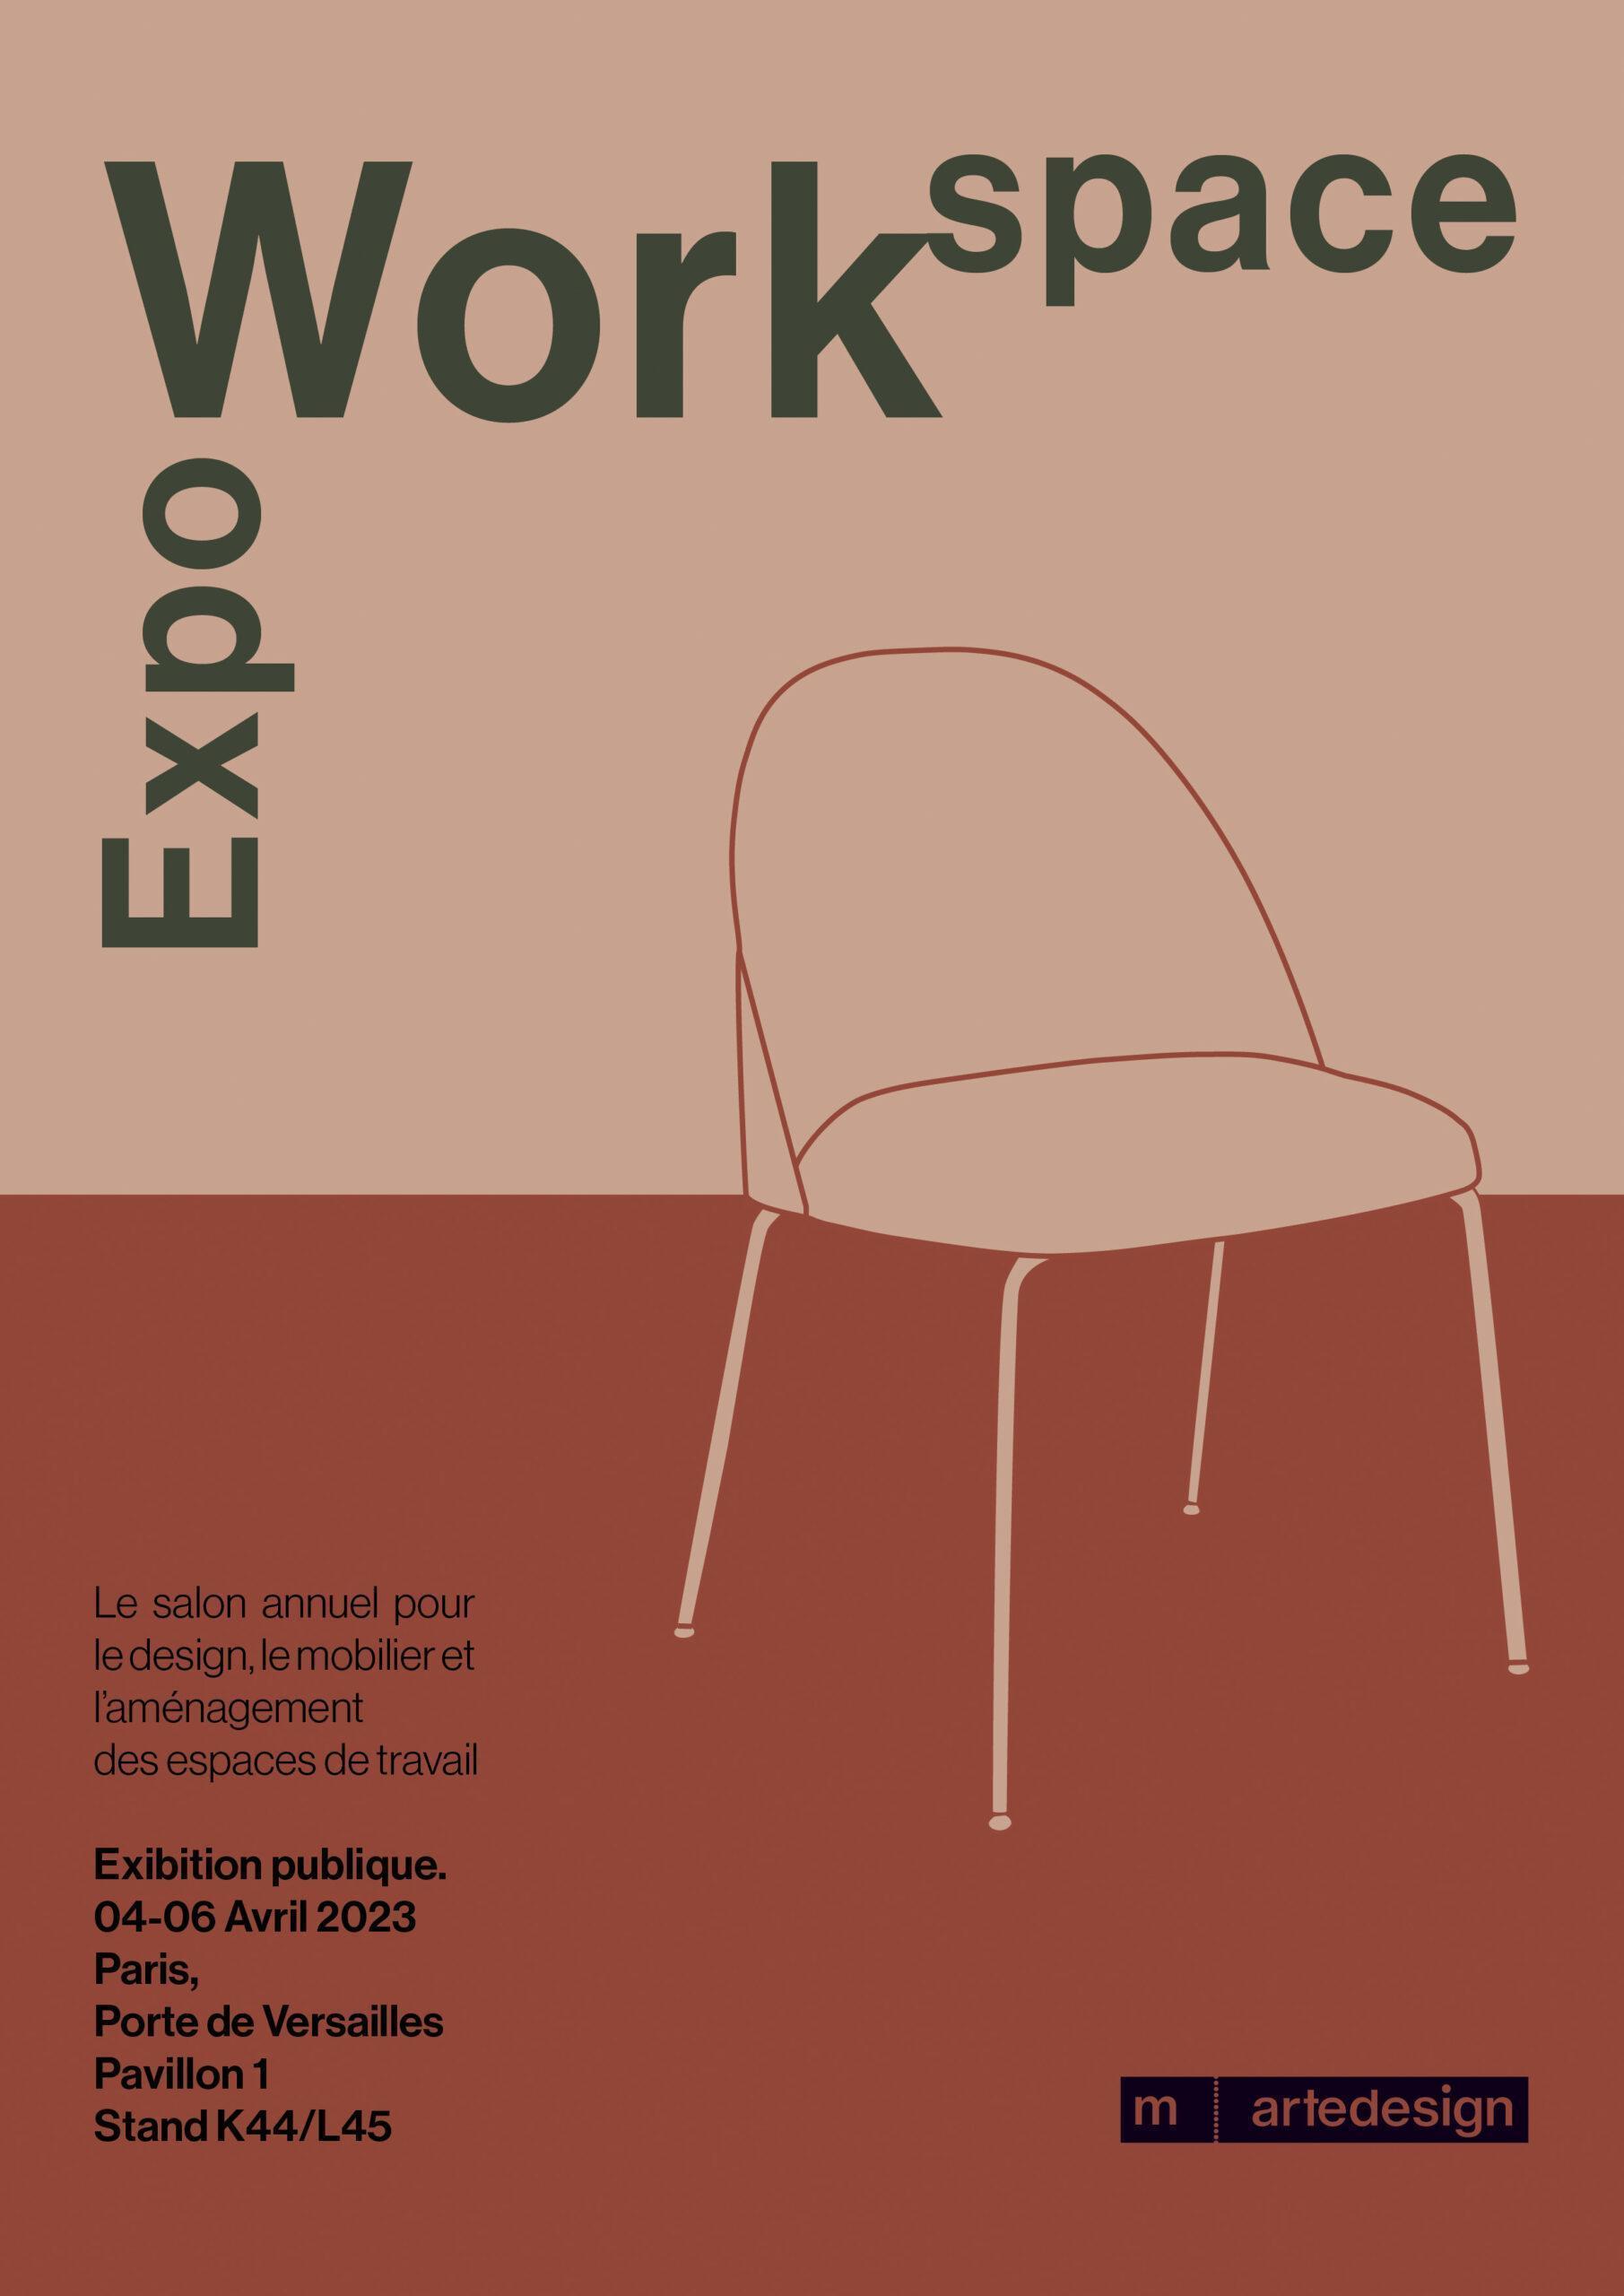 m.artedesign x Workspace Expo - 4, 5, 6 April 2023 - Paris, Porte Versailles (France) _ Poster